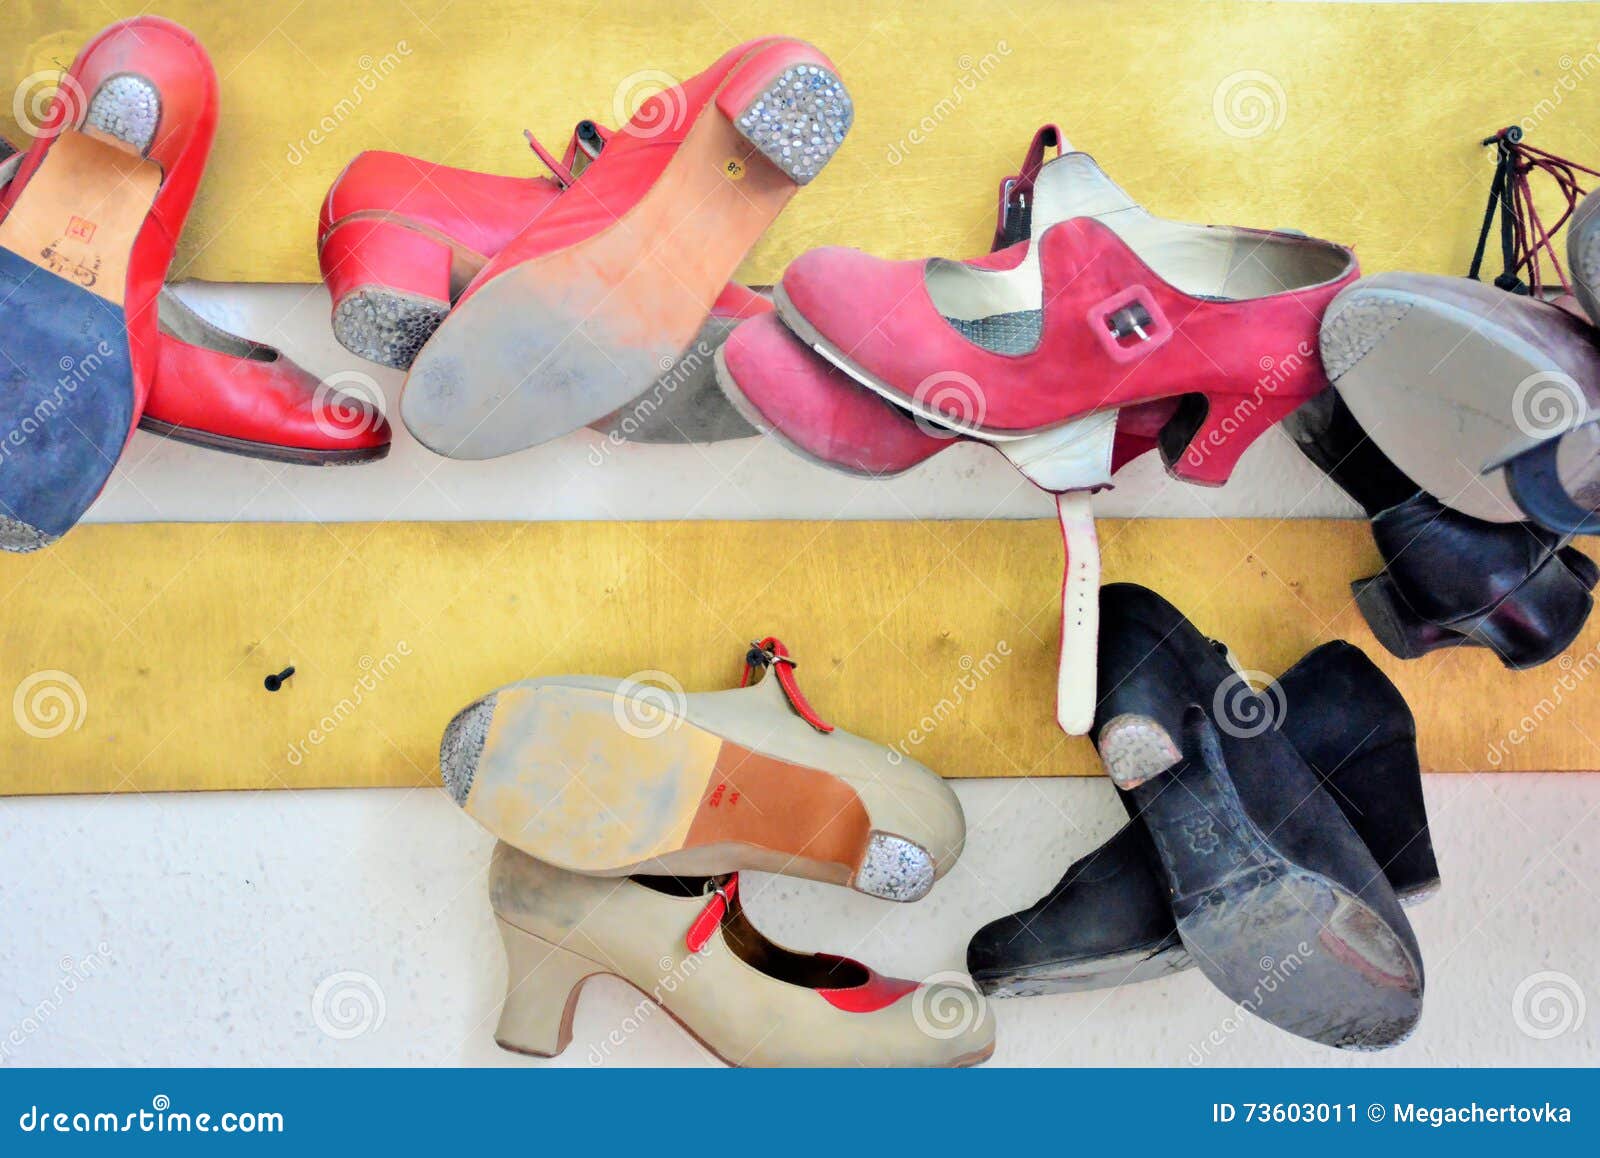 used flamenco shoes